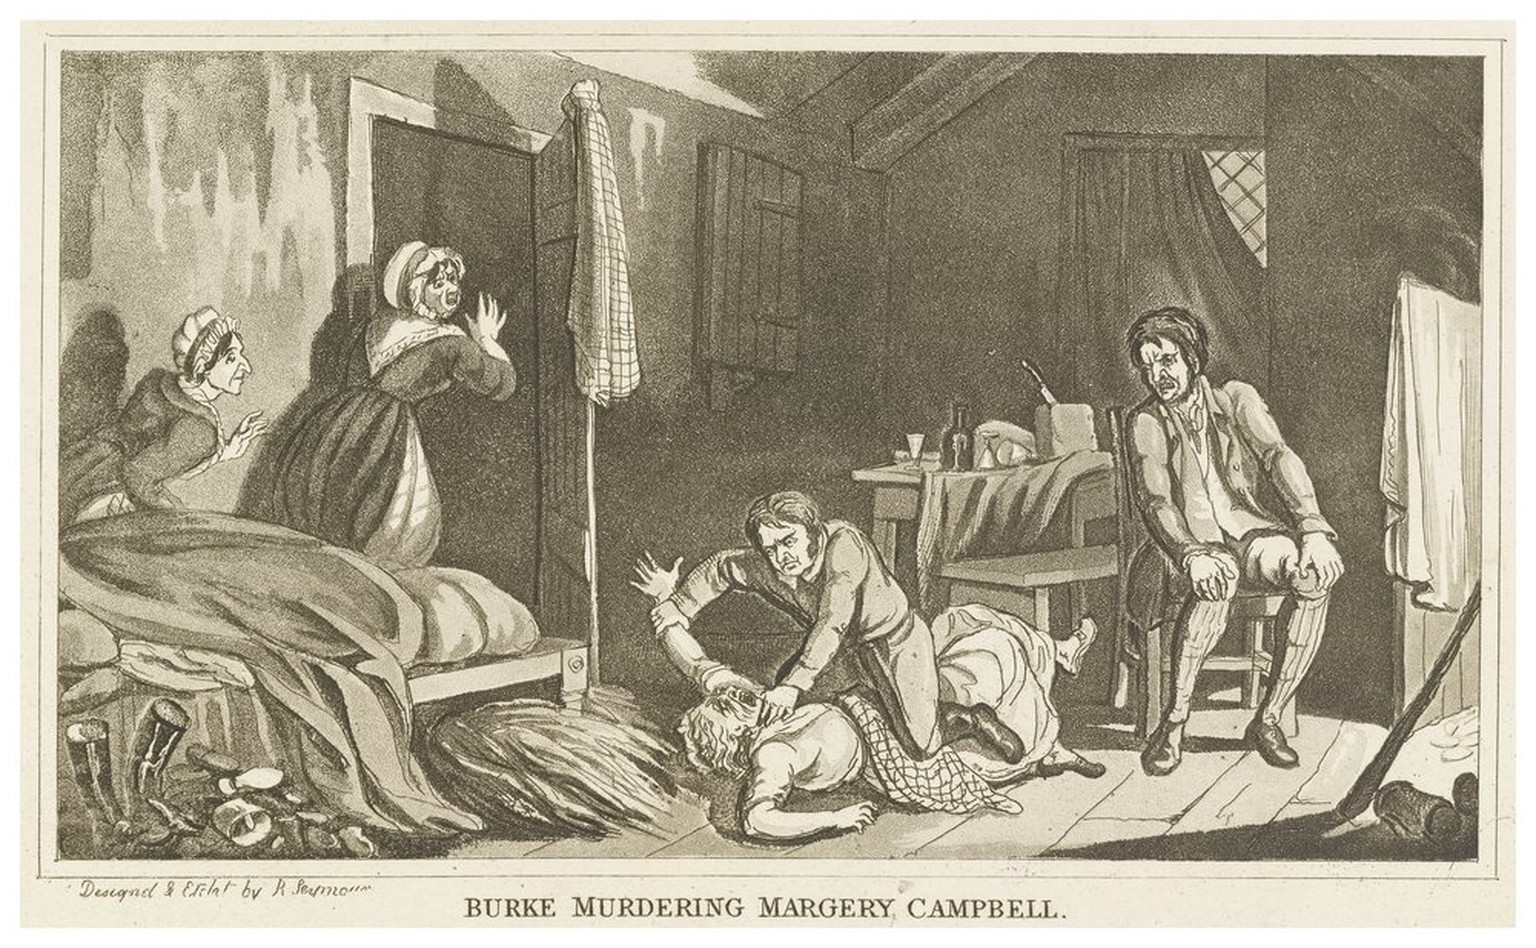 Burke bringt Margaret Docherty (auch Margery Campbell genannt) um. Seine Methode, die Opfer zu ermorden, wurde unter der Bezeichnung «Burking» berüchtigt. 